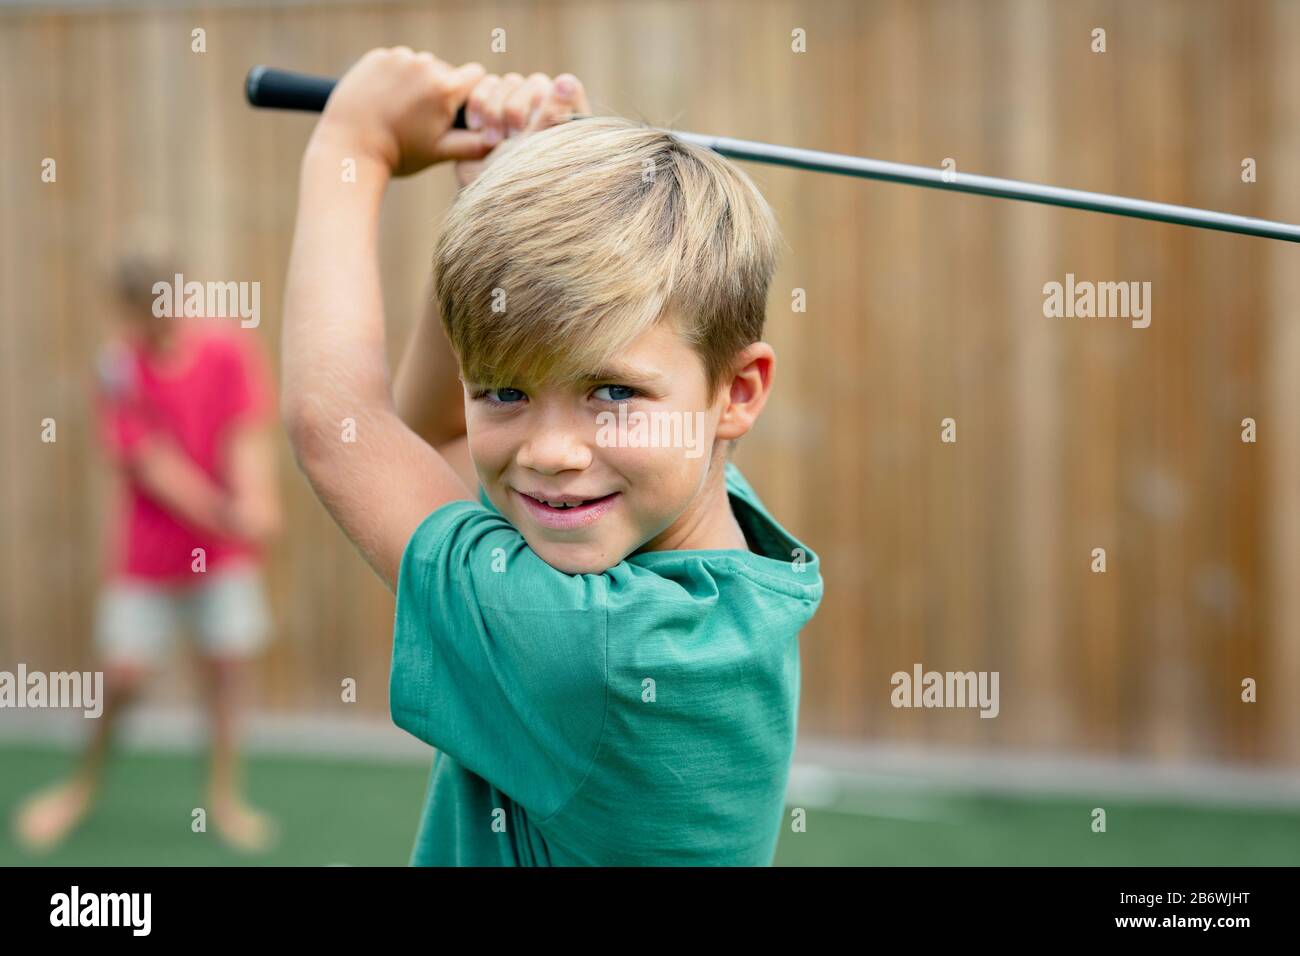 Ein Vorderansicht Schuss eines jungen Golfers lächelnd und mit Blick auf die Kamera hält er einen Golfclub. Stockfoto